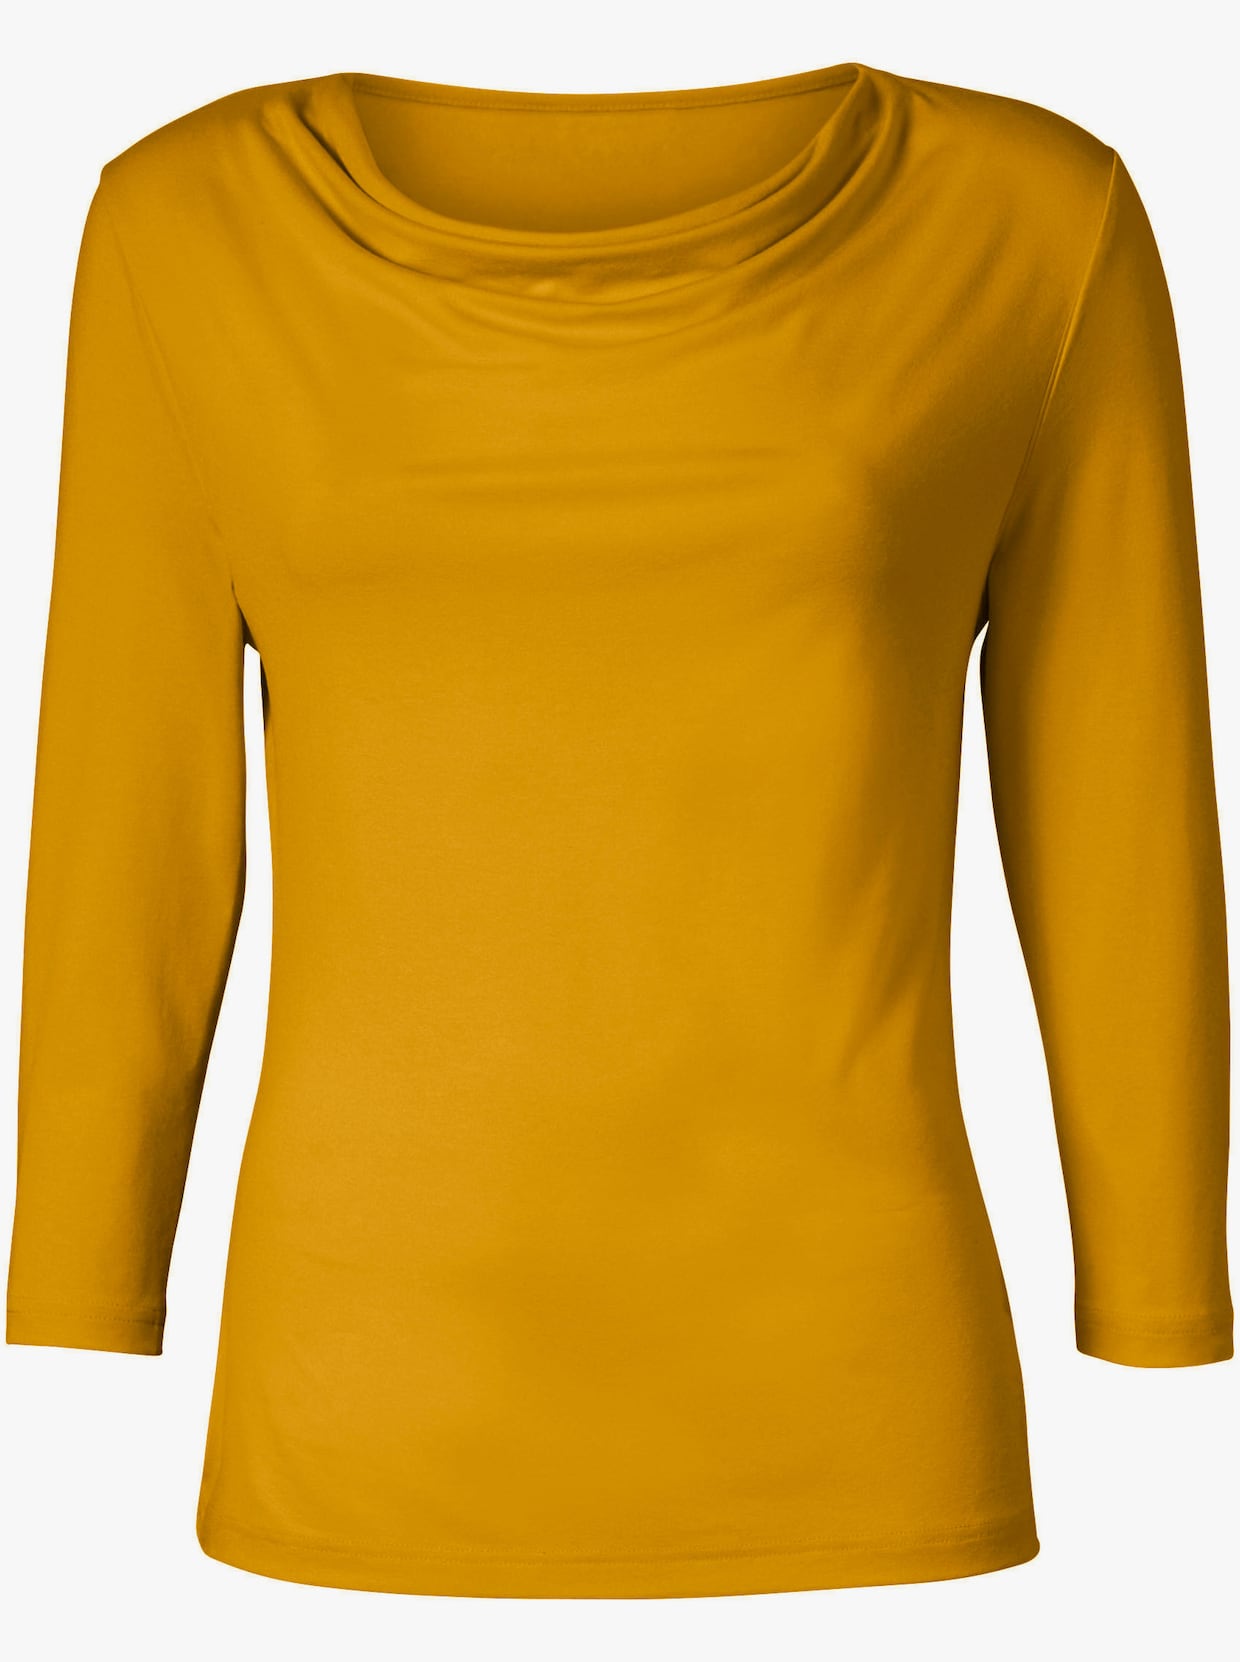 Tričko s vodopádovým golierom - kukuričná žltá